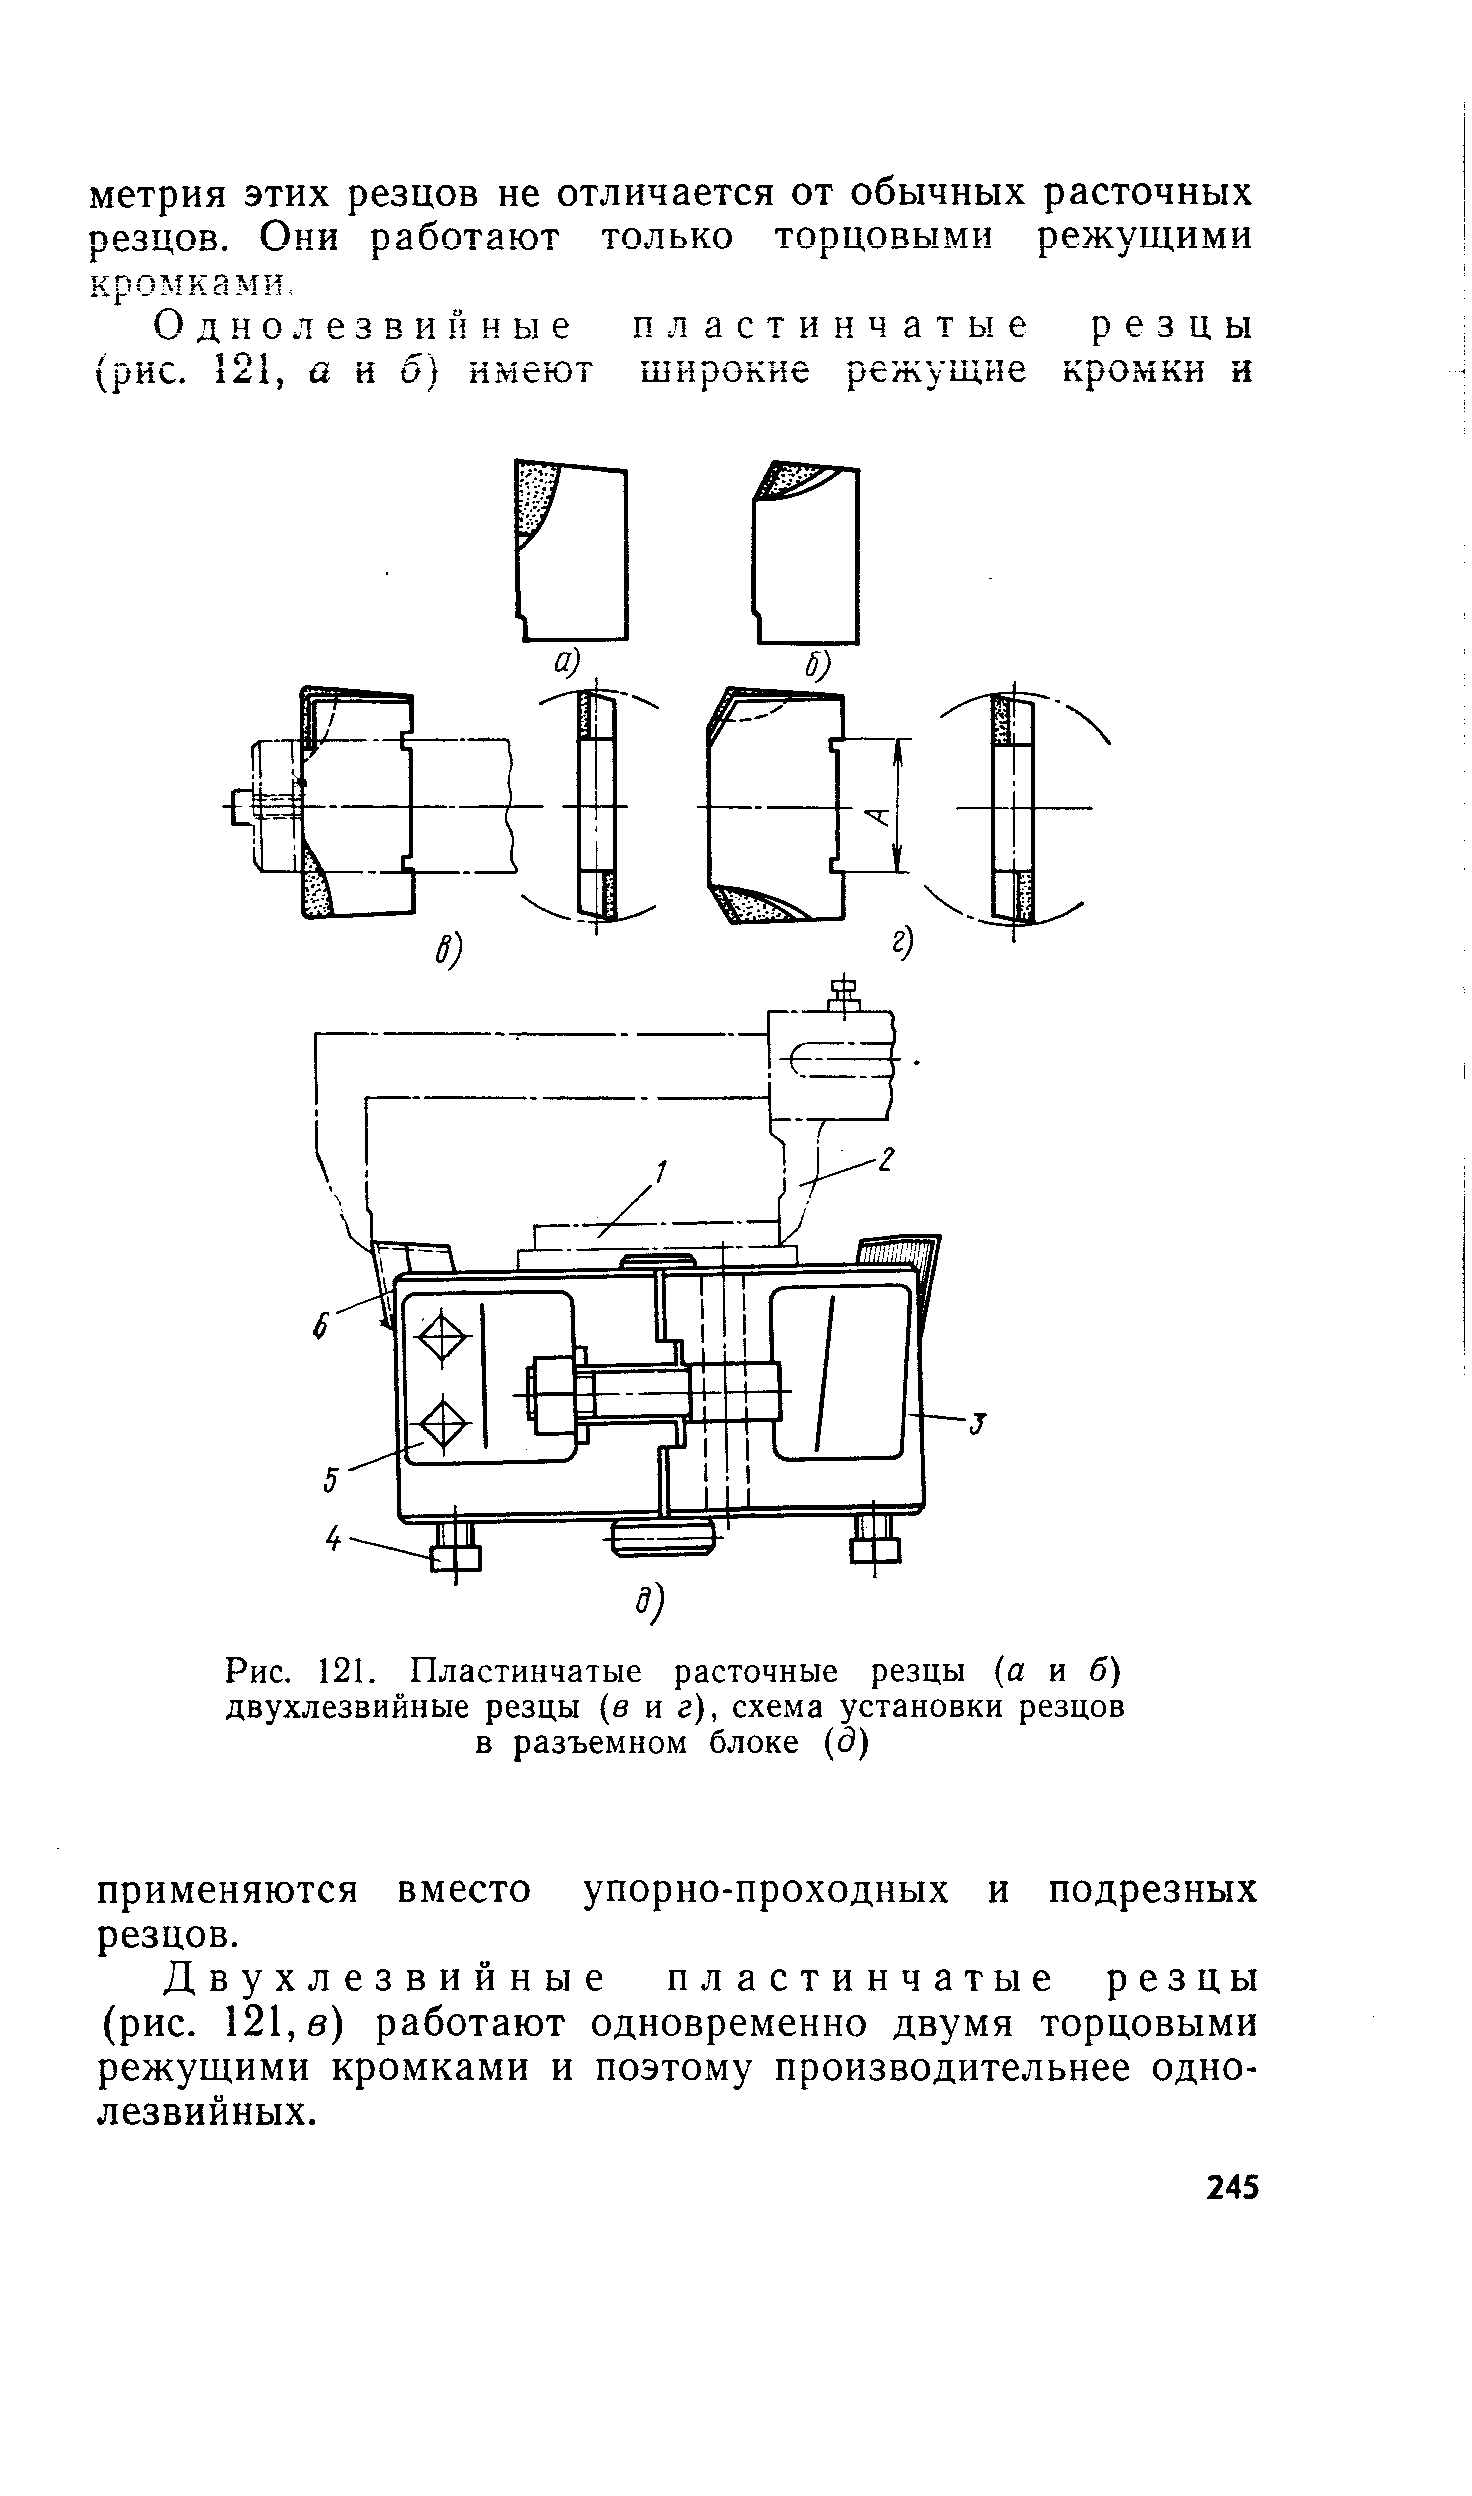 Рис. 121. Пластинчатые расточные резцы (а и б) двухлезвийные резцы (в иг), схема установки резцов в разъемном блоке (5)
